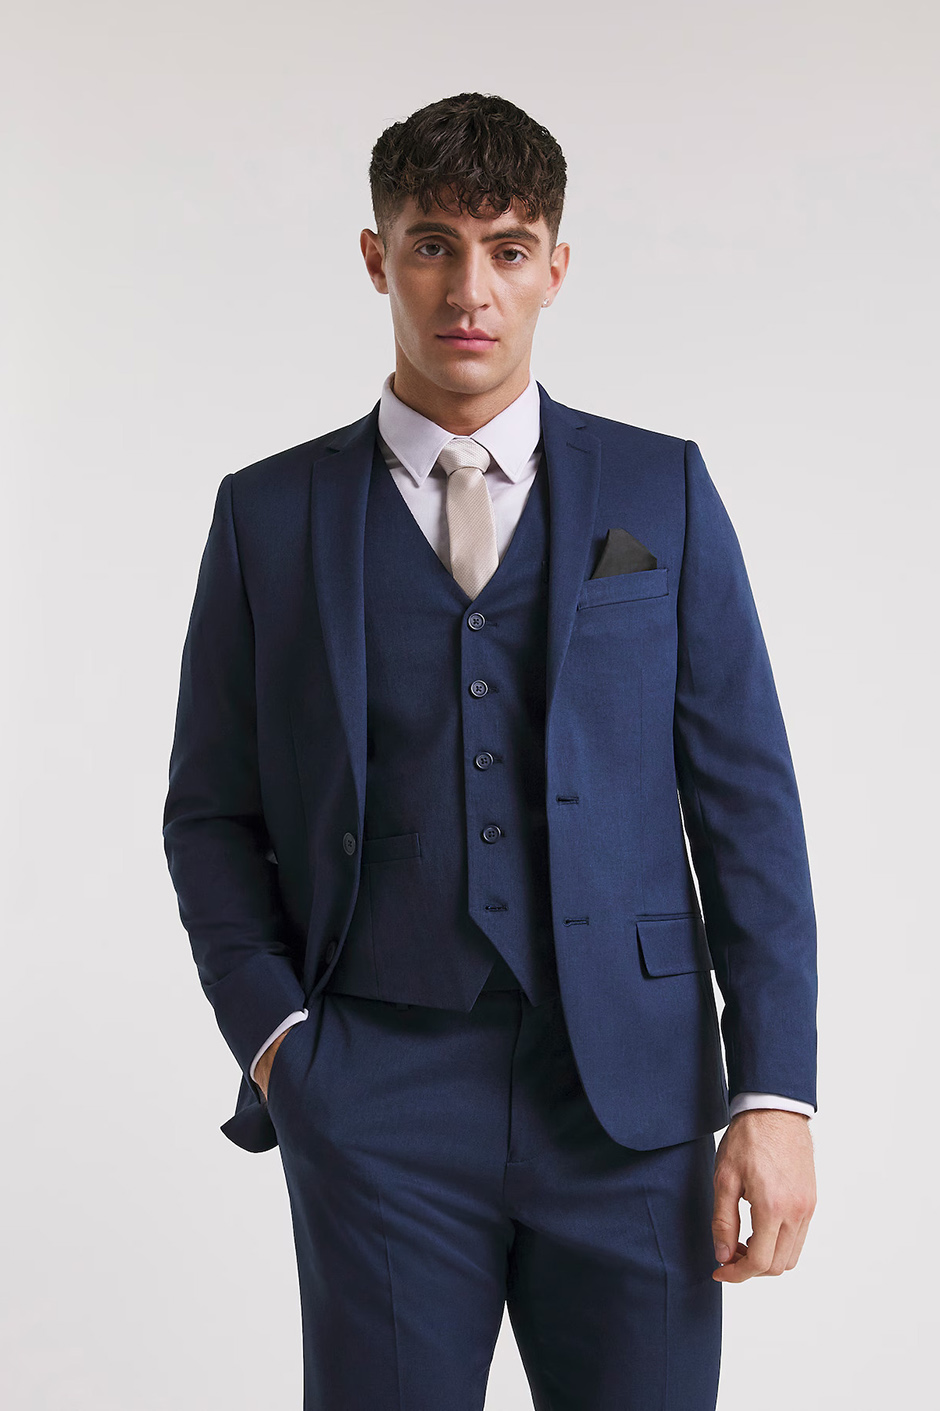 Navy groomsmen suit from Jacamo in a regular fit design for weddings 